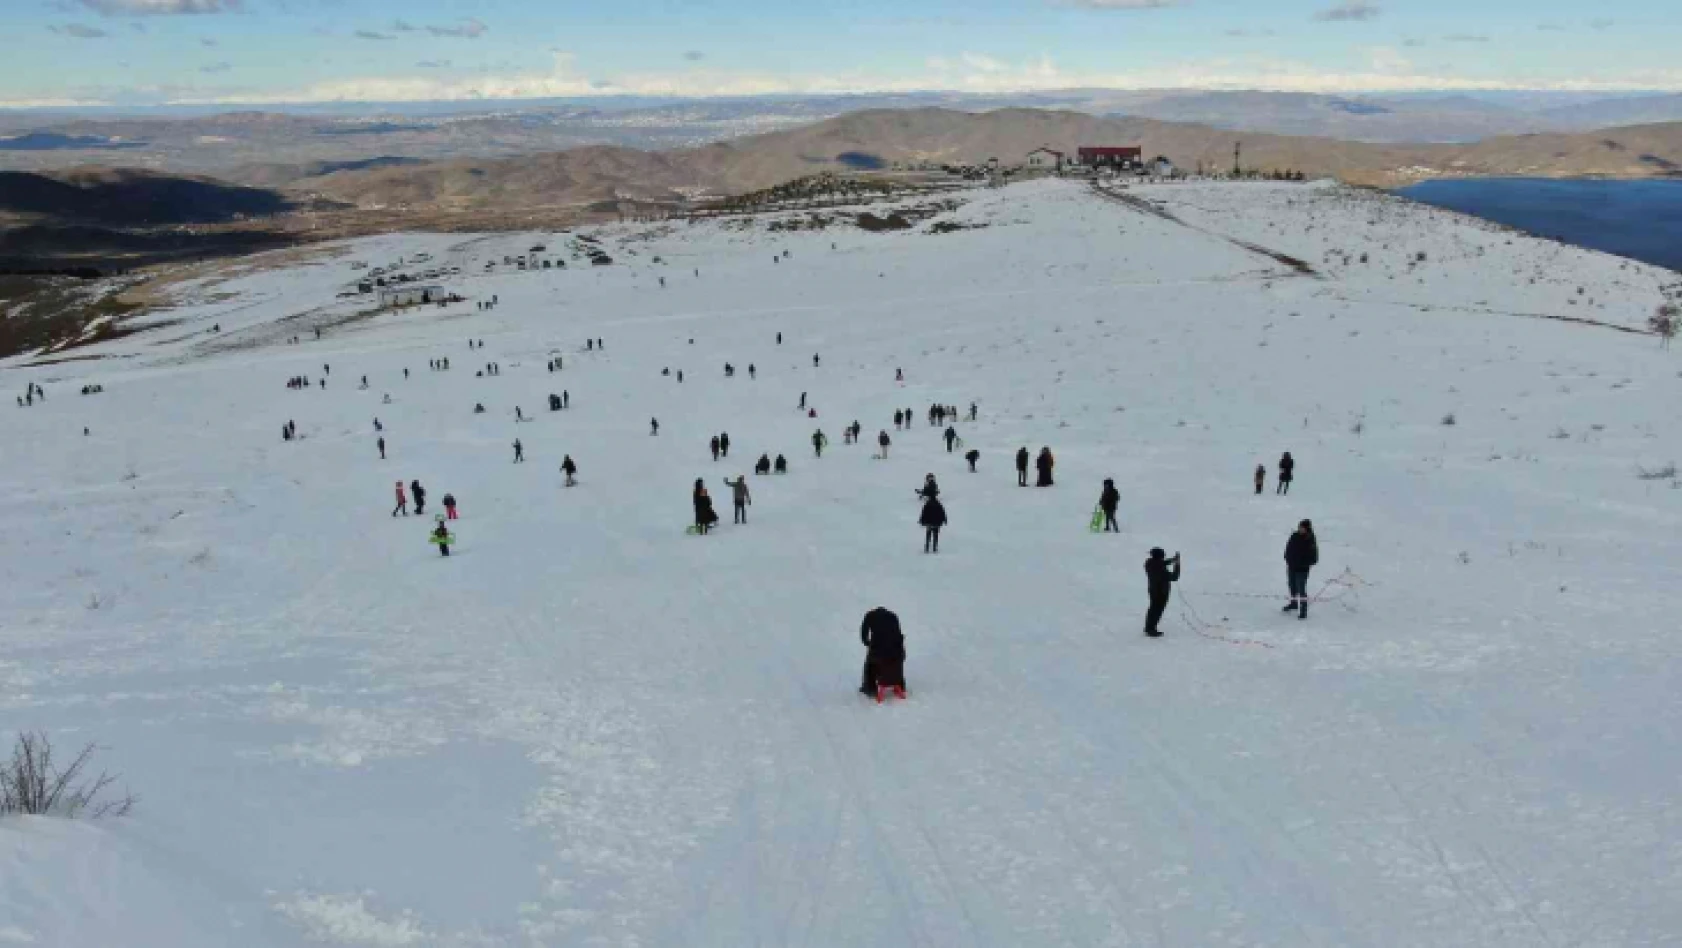 Kara hasret kalan vatandaşlar Hazarbaba Kayak Merkezine akın etti